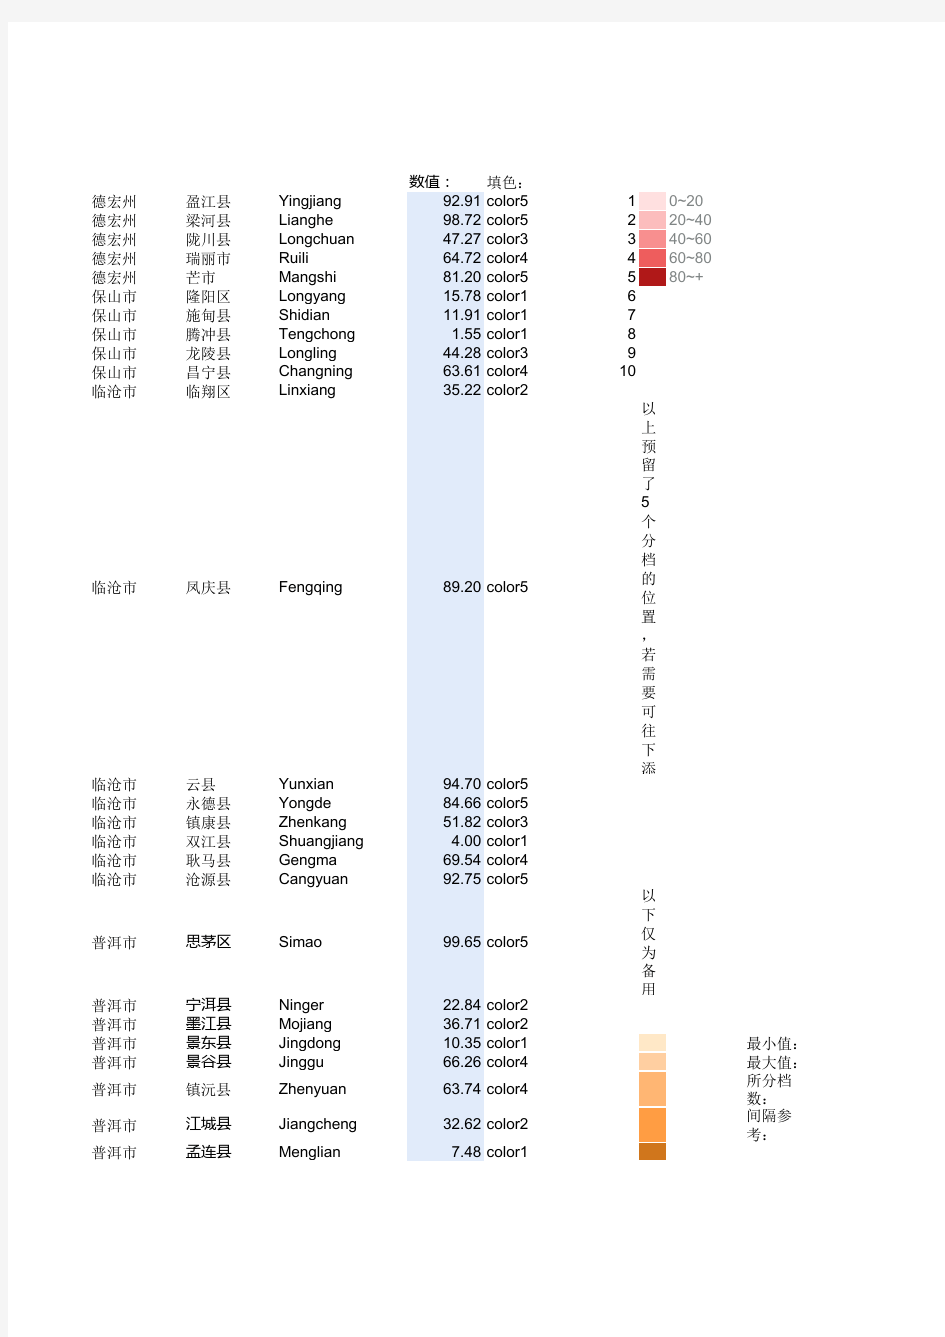 云南省数据地图-到县级-分档填色